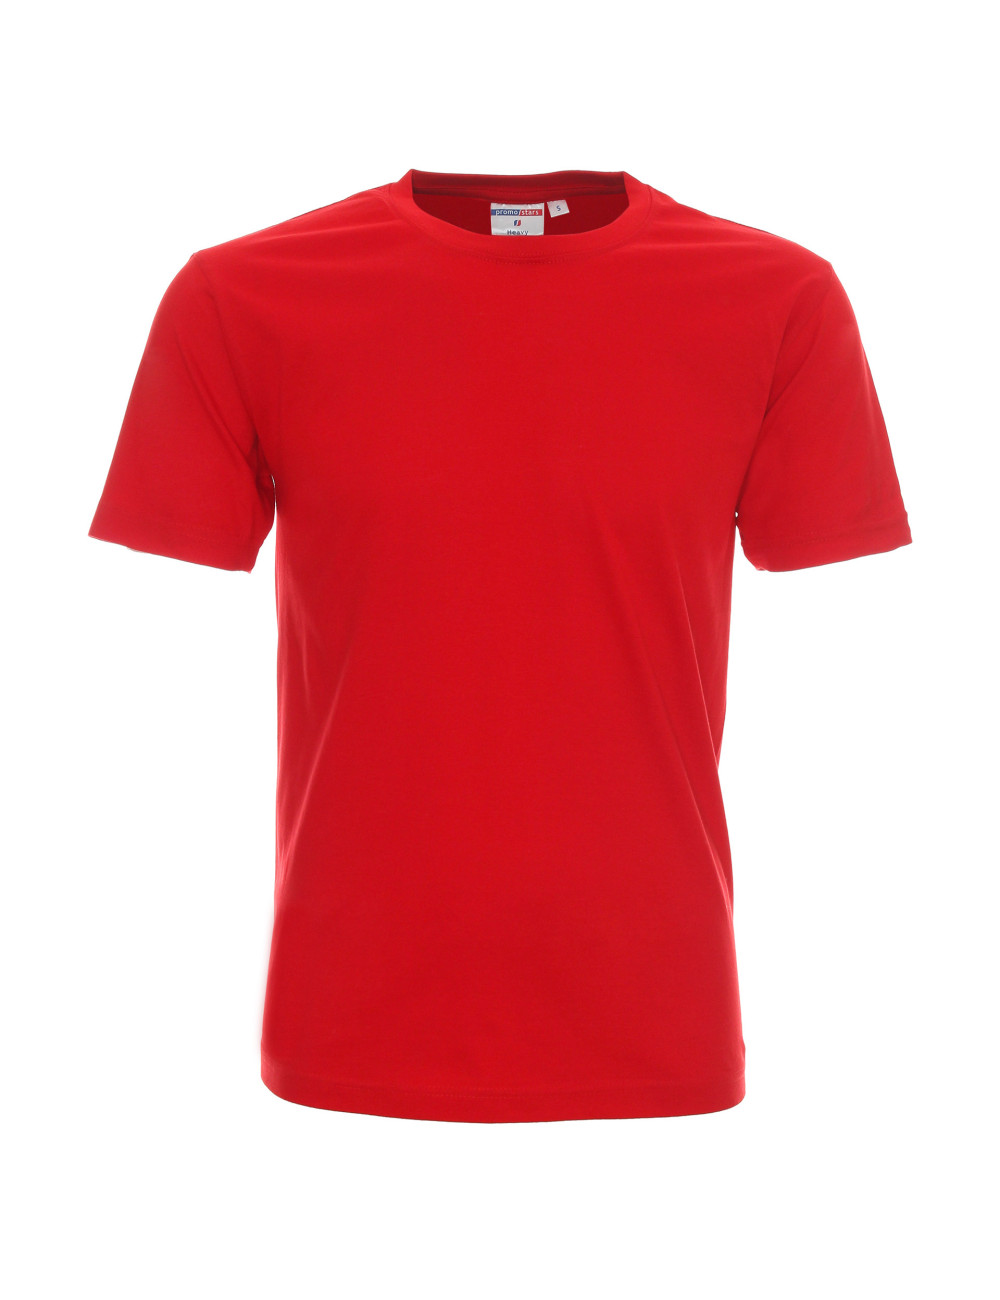 Schweres Herren-T-Shirt 170 rot von Promostars